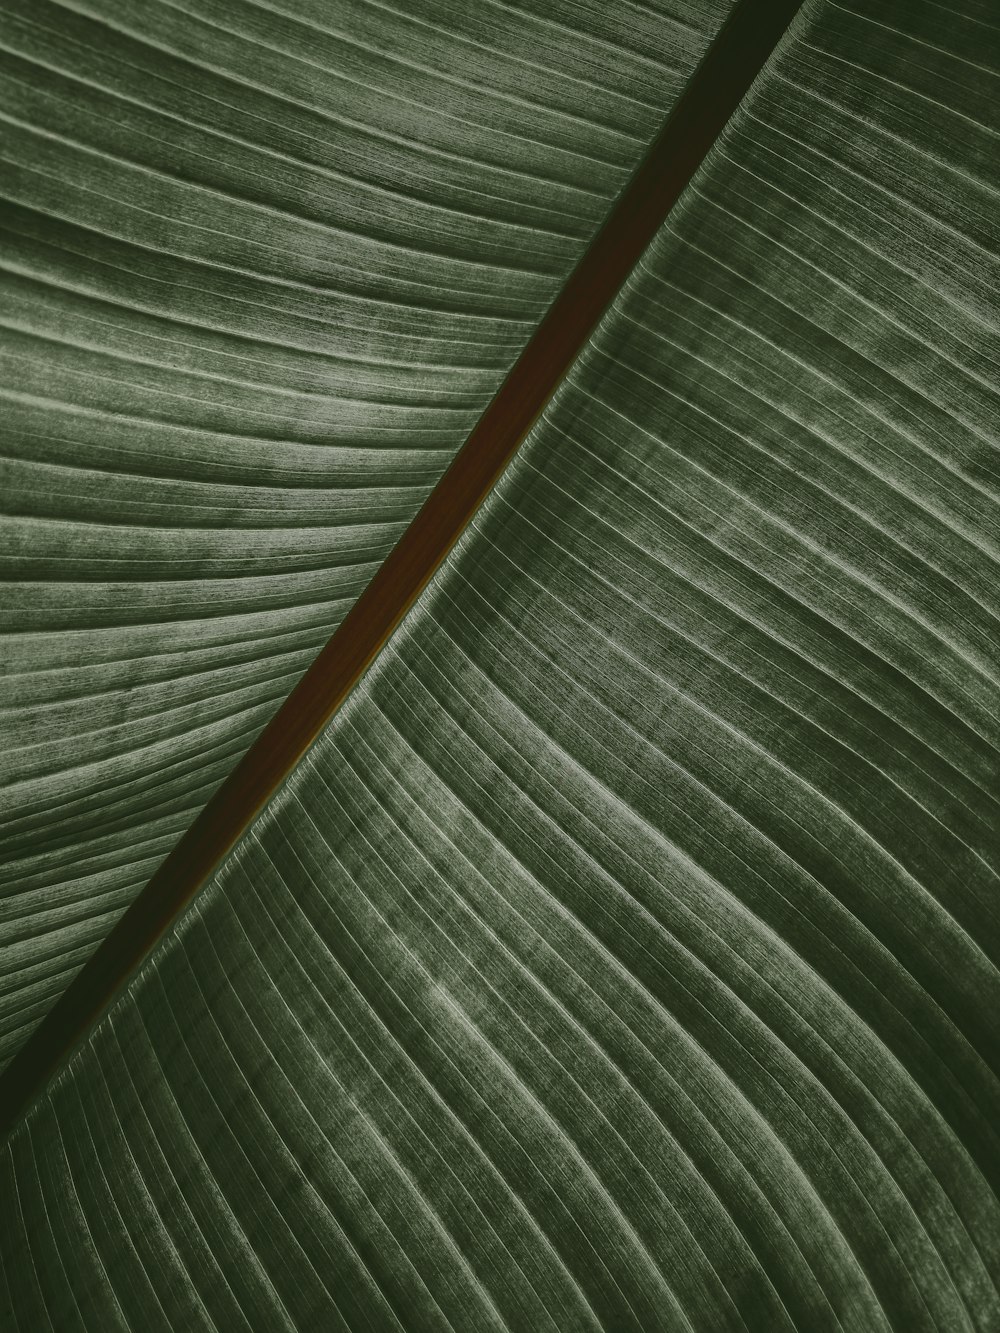 Eine Nahaufnahme eines großen grünen Blattes